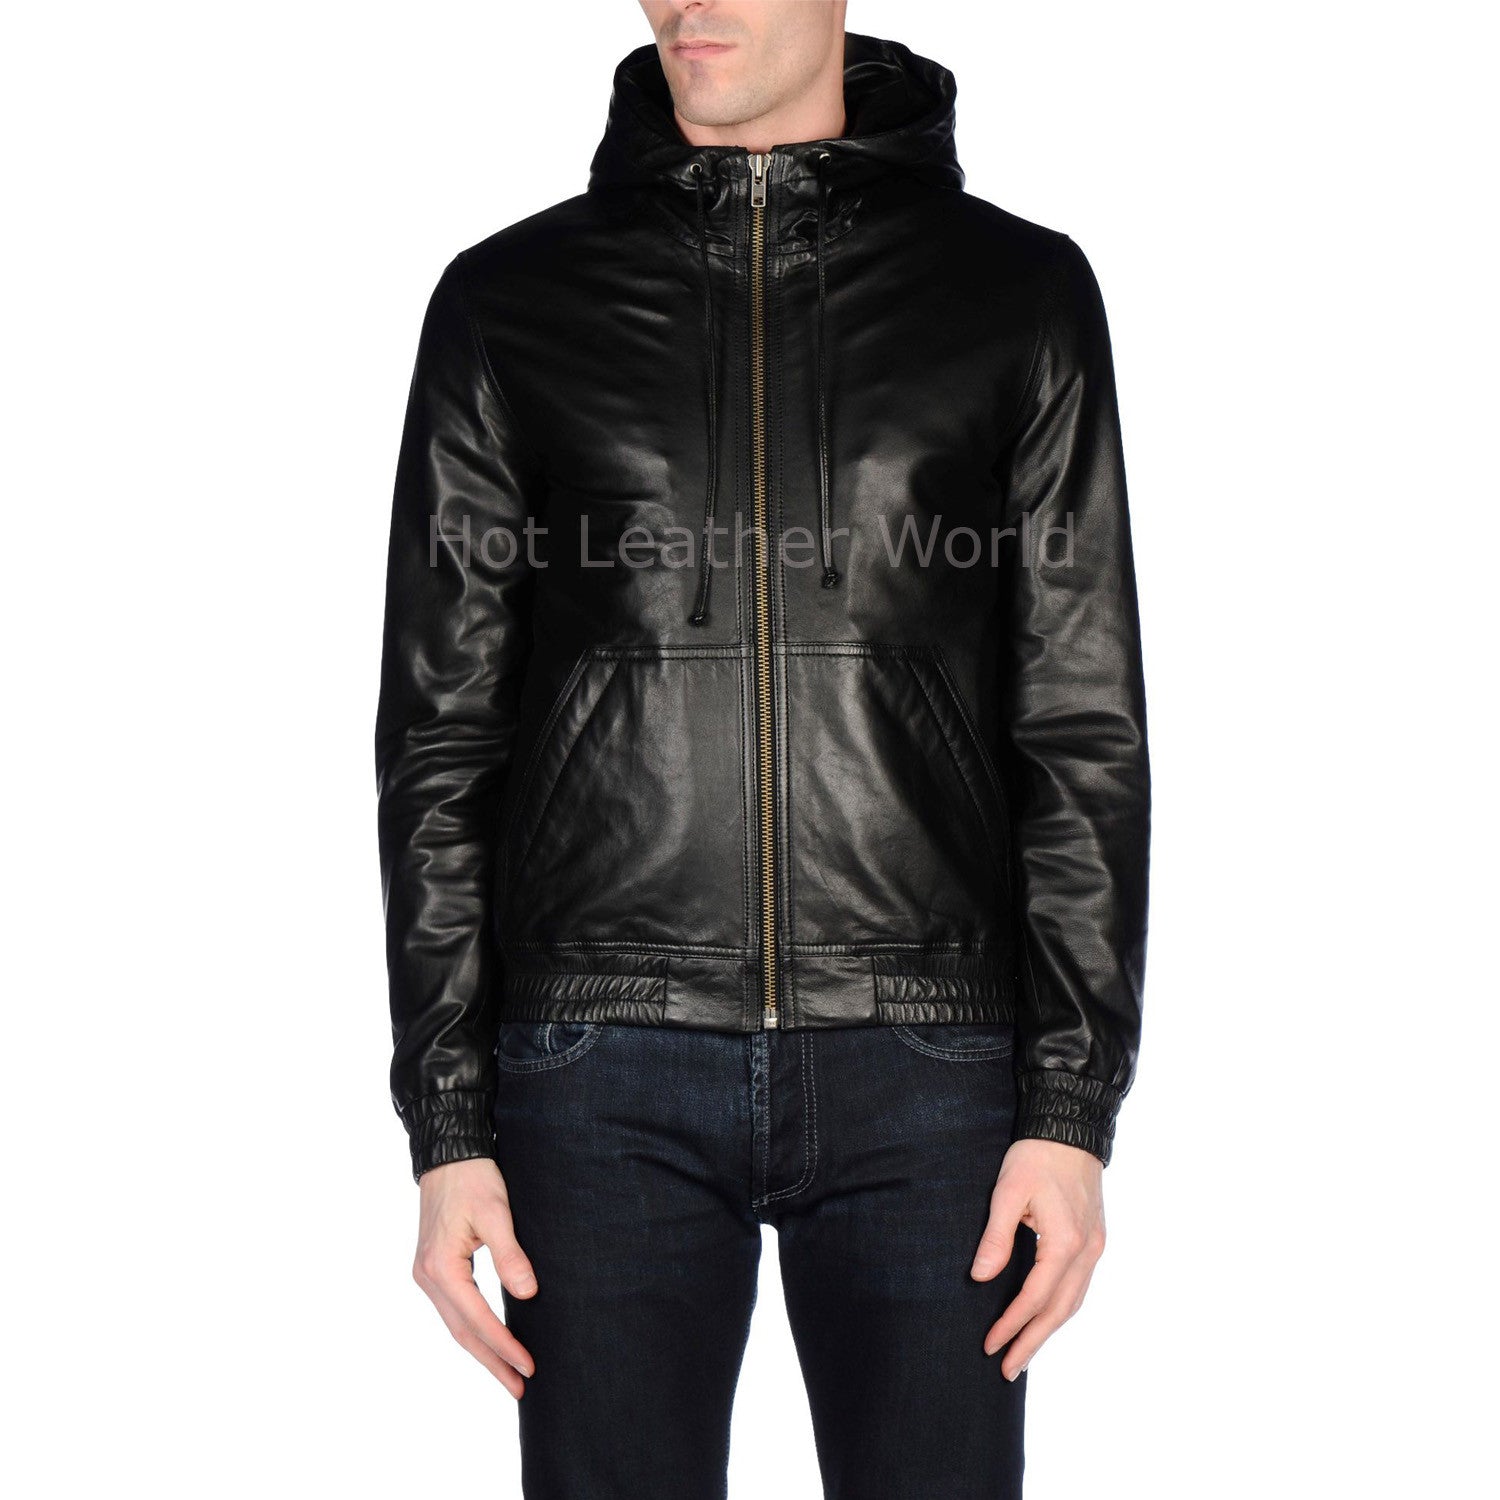 Hooded Style Men Leather Jacket -  HOTLEATHERWORLD